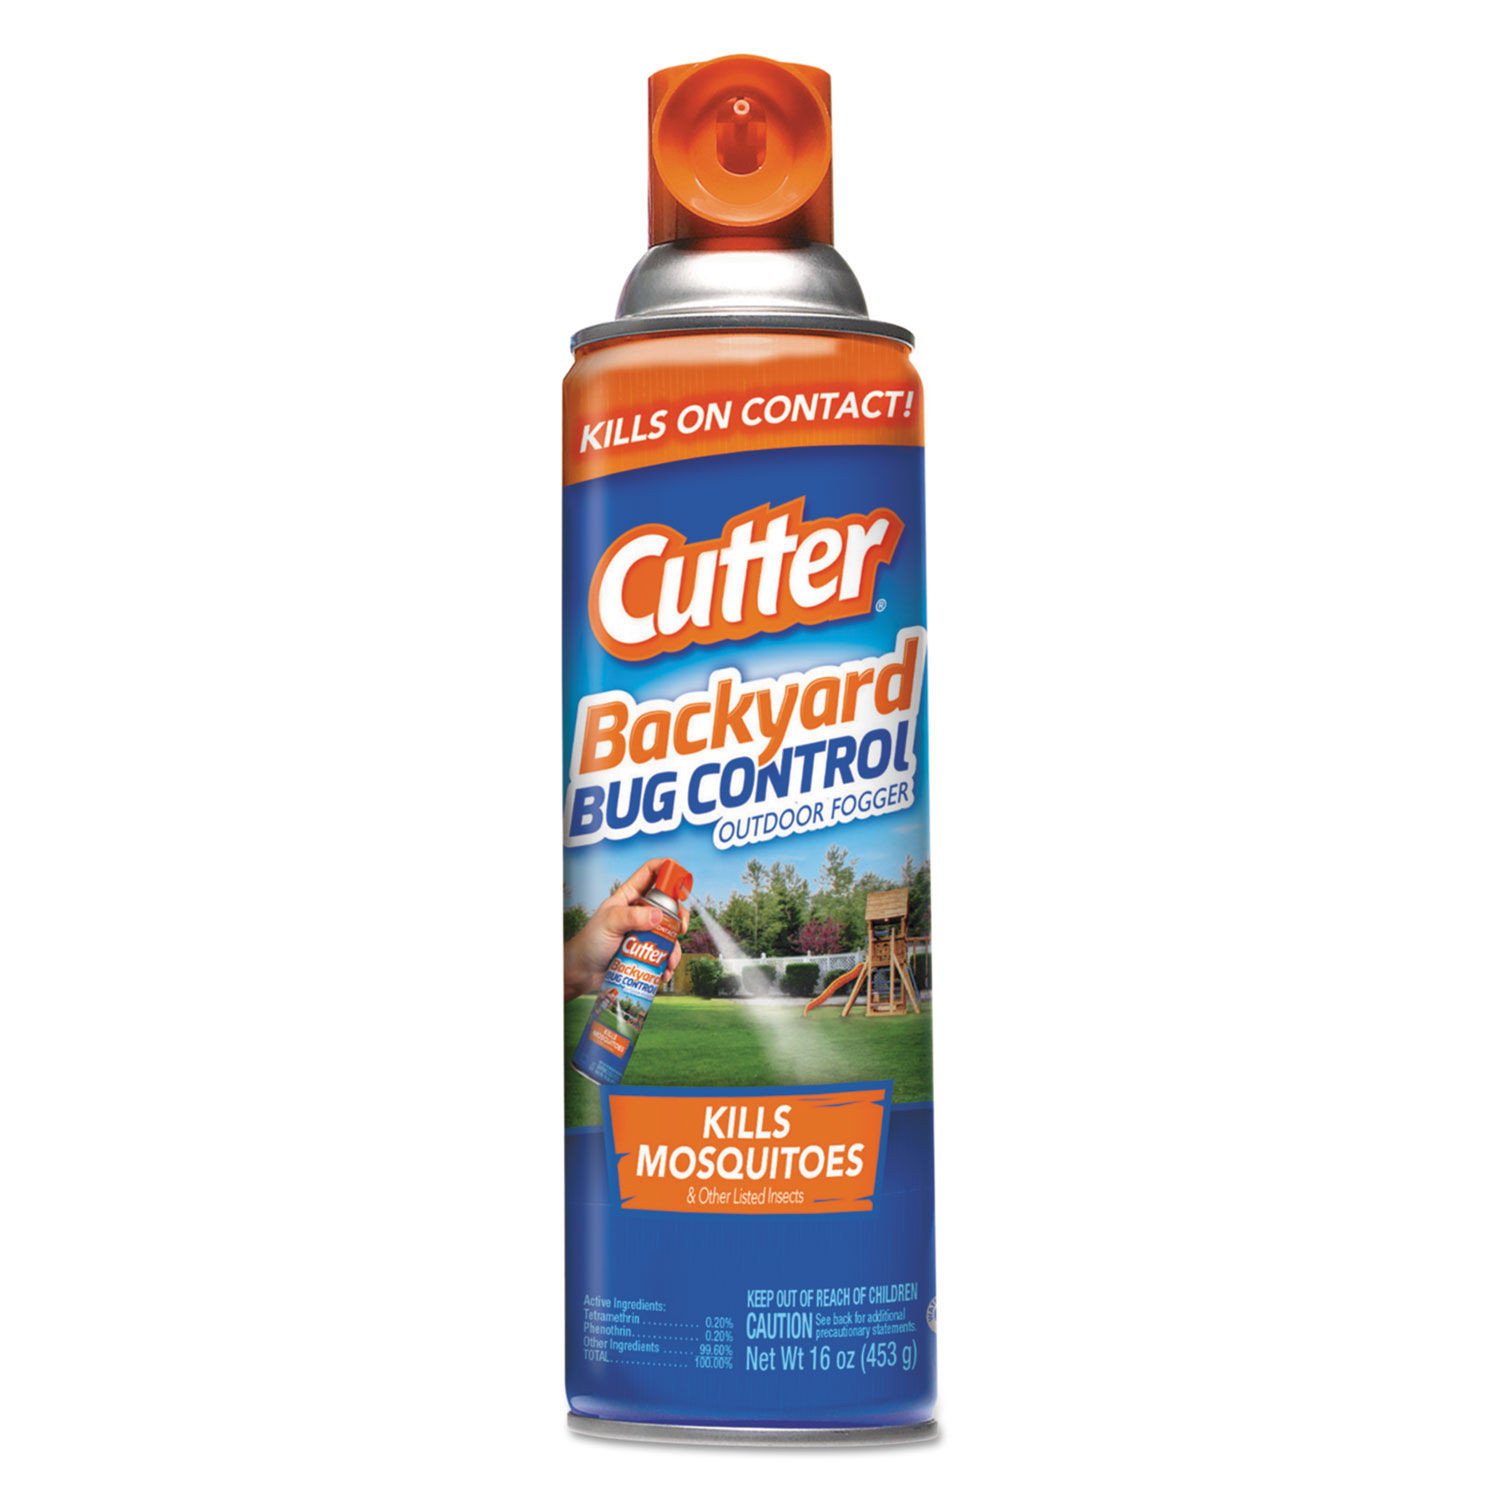 Cutters Bug Free Backyard
 Cutter Backyard Bug Control Outdoor Fogger Spray by